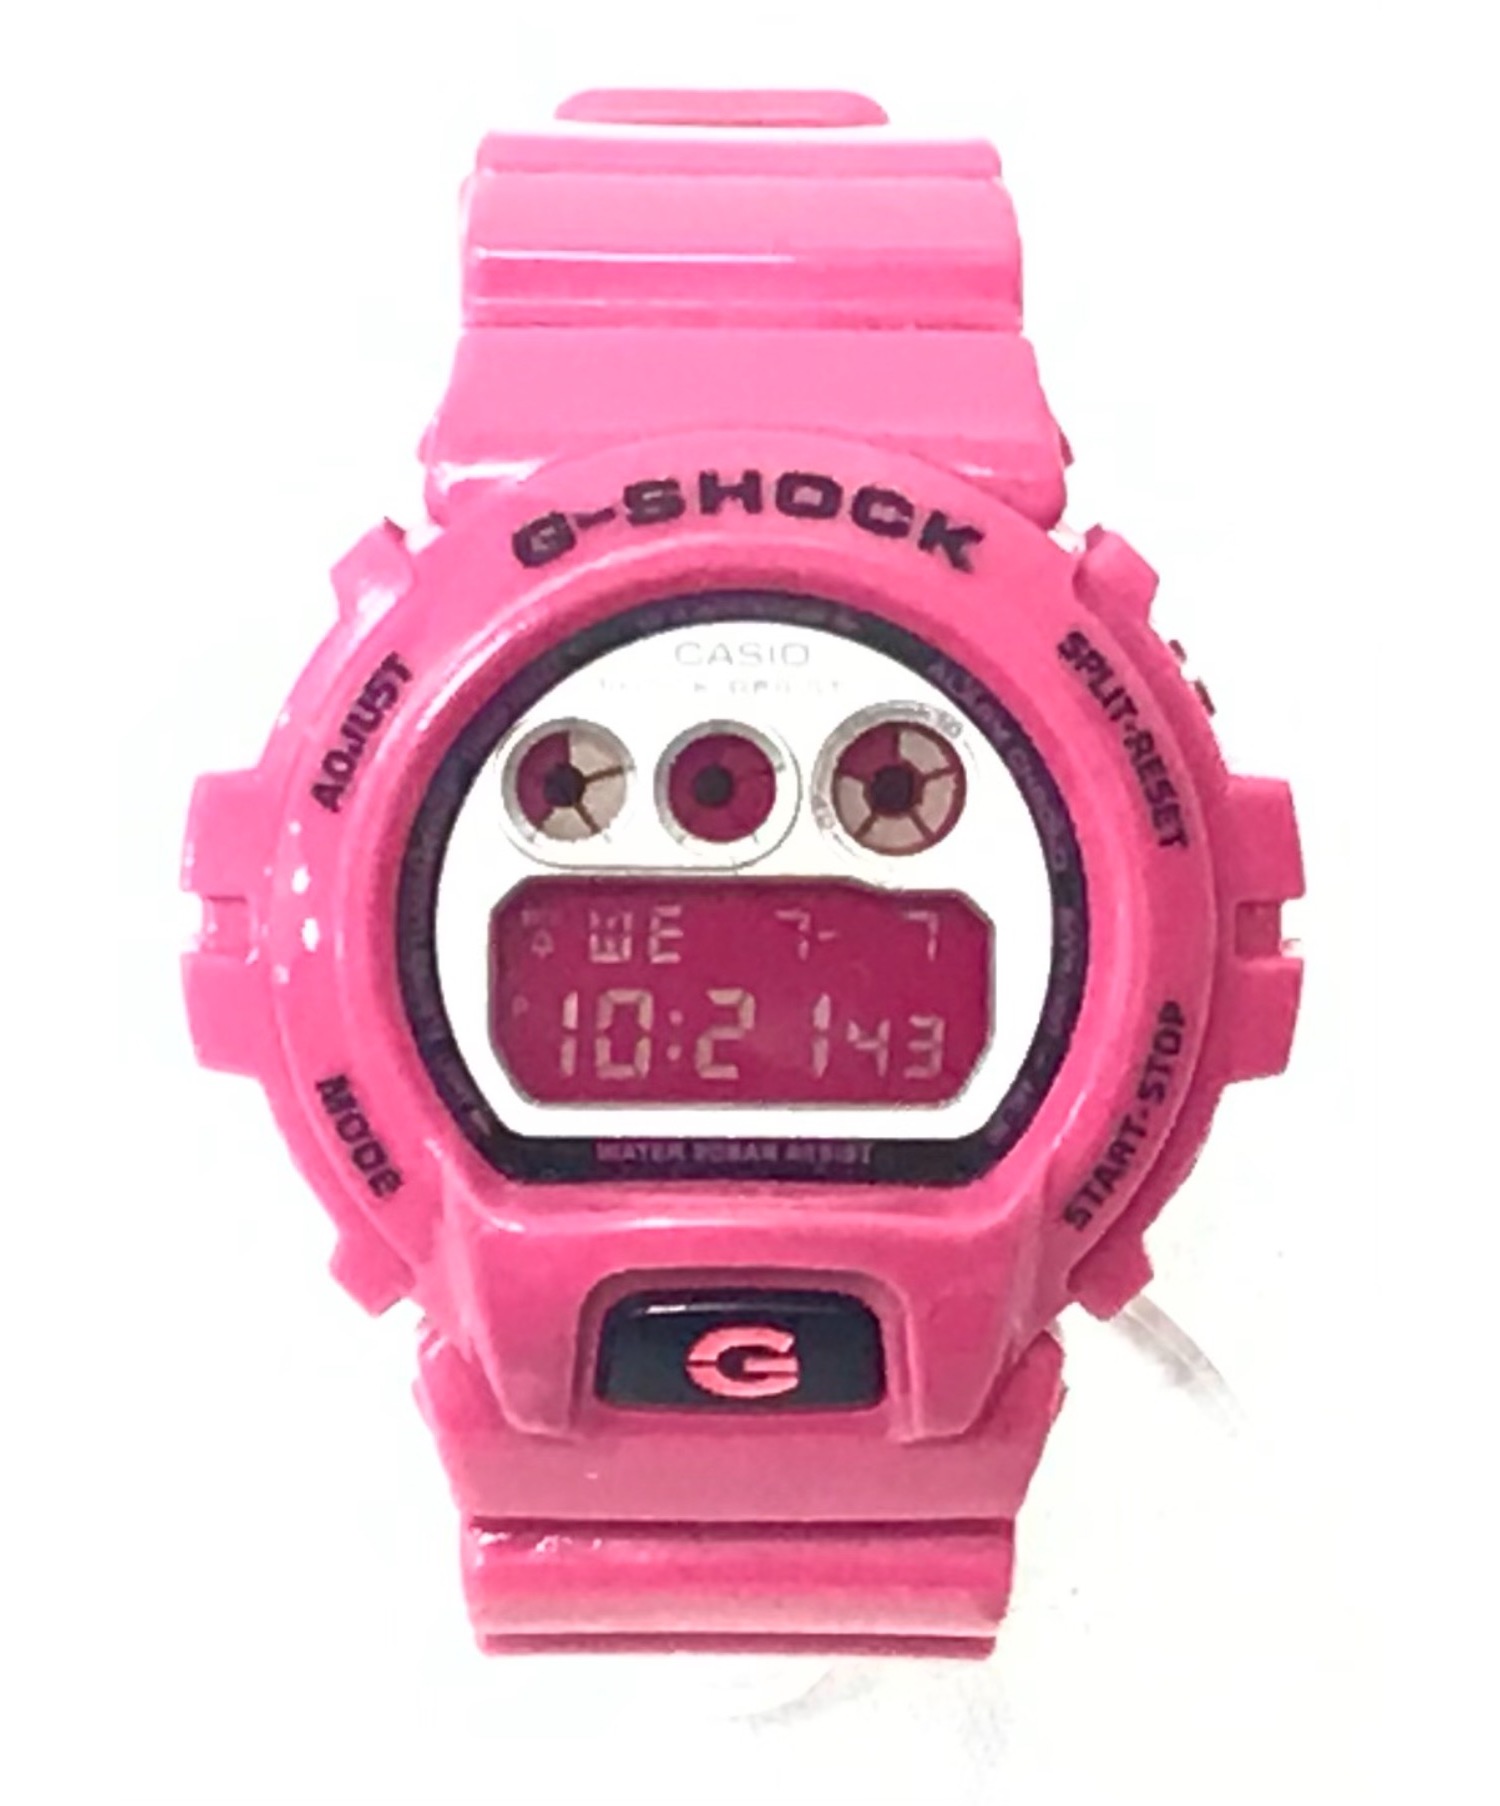 CASIO (カシオ) G-SHOCK/腕時計 ピンク